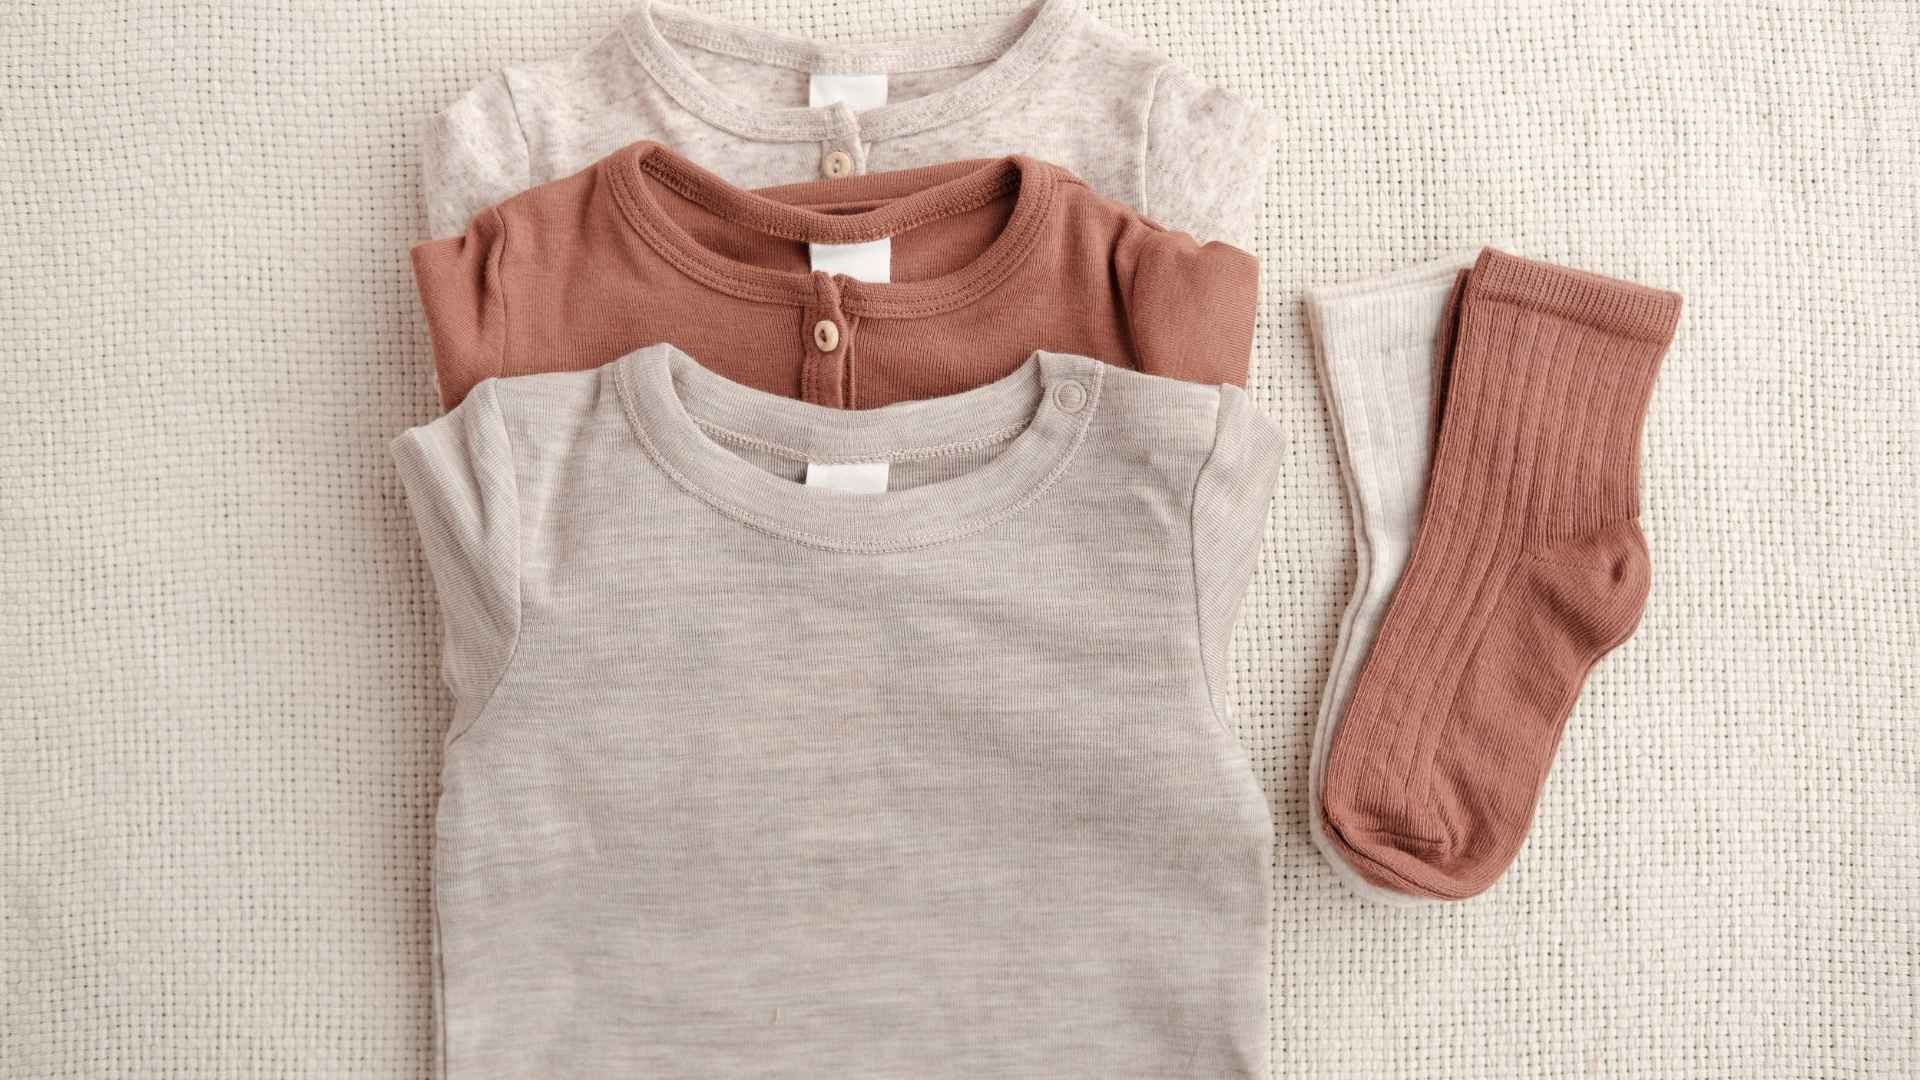 בגדי תינוקות מעוצבים